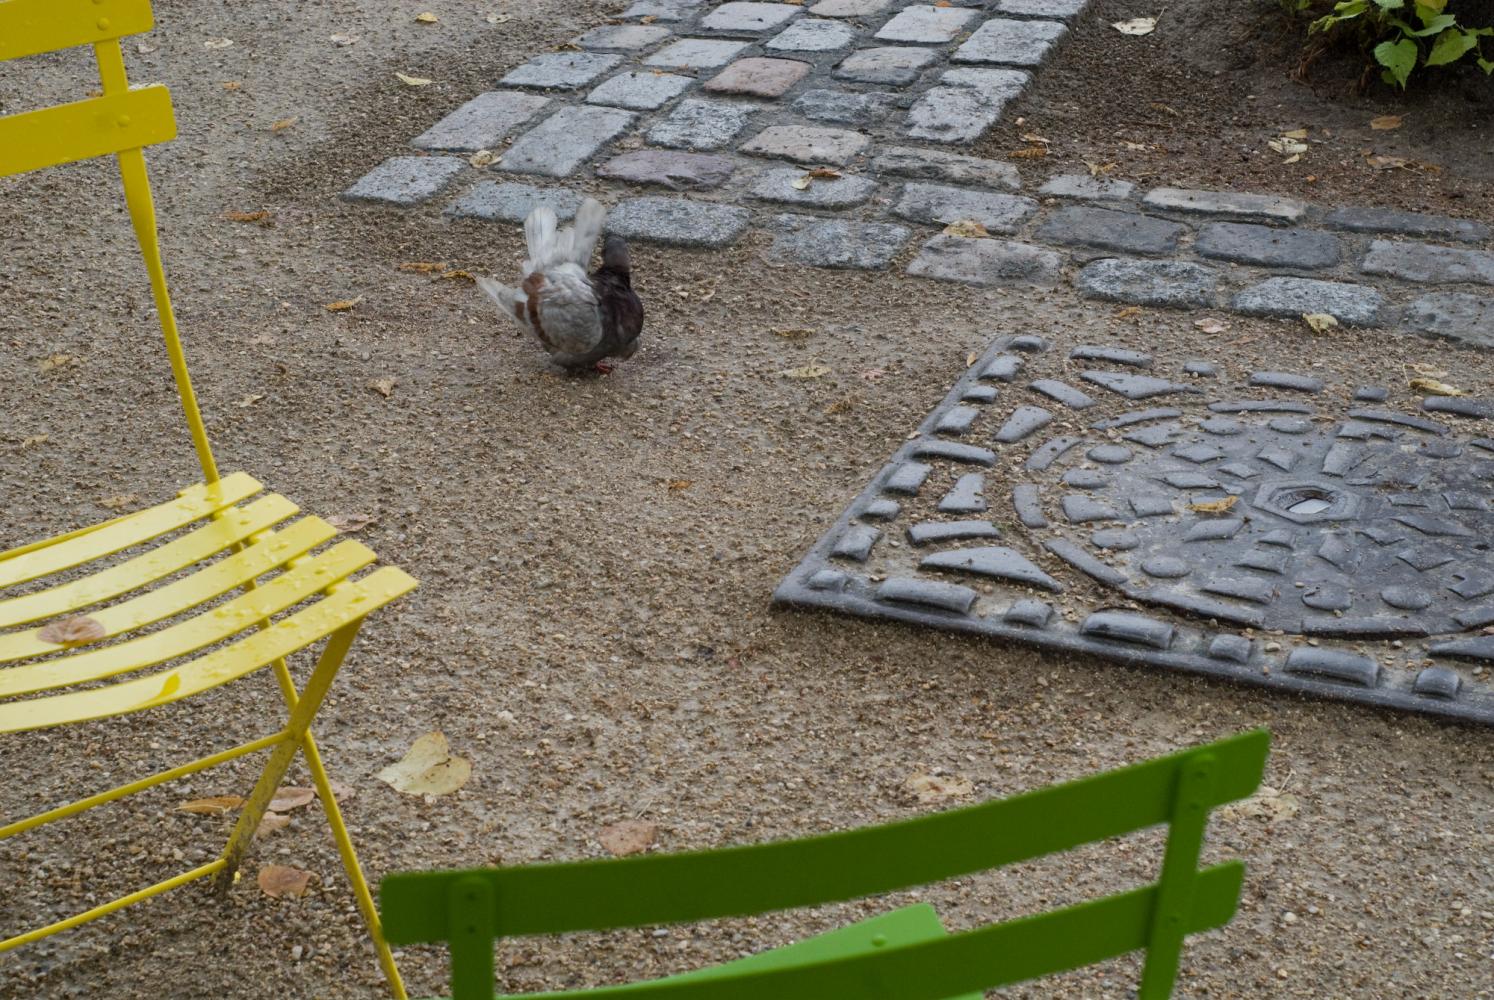 Une chaise pliante jaune, une autre verte, et derrière, un pigeon qui s'ébroue sur le sable mouillé, entre une plaque d’égout et quelques pavés. Paris, août 2010.